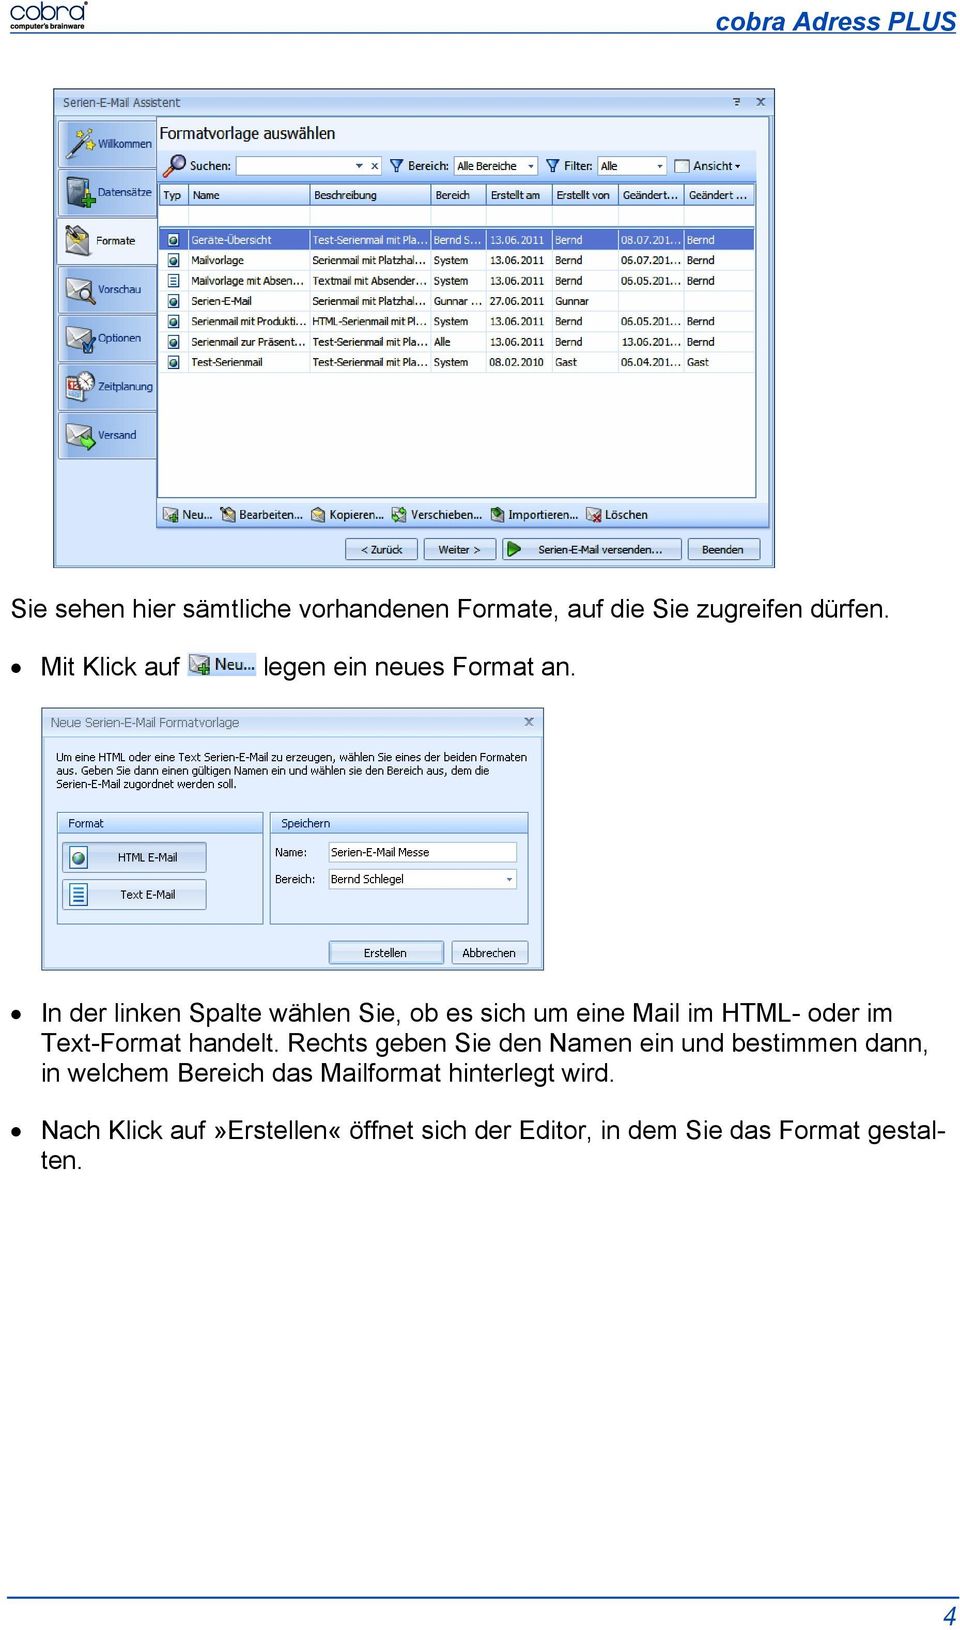 In der linken Spalte wählen Sie, ob es sich um eine Mail im HTML- oder im Text-Format handelt.